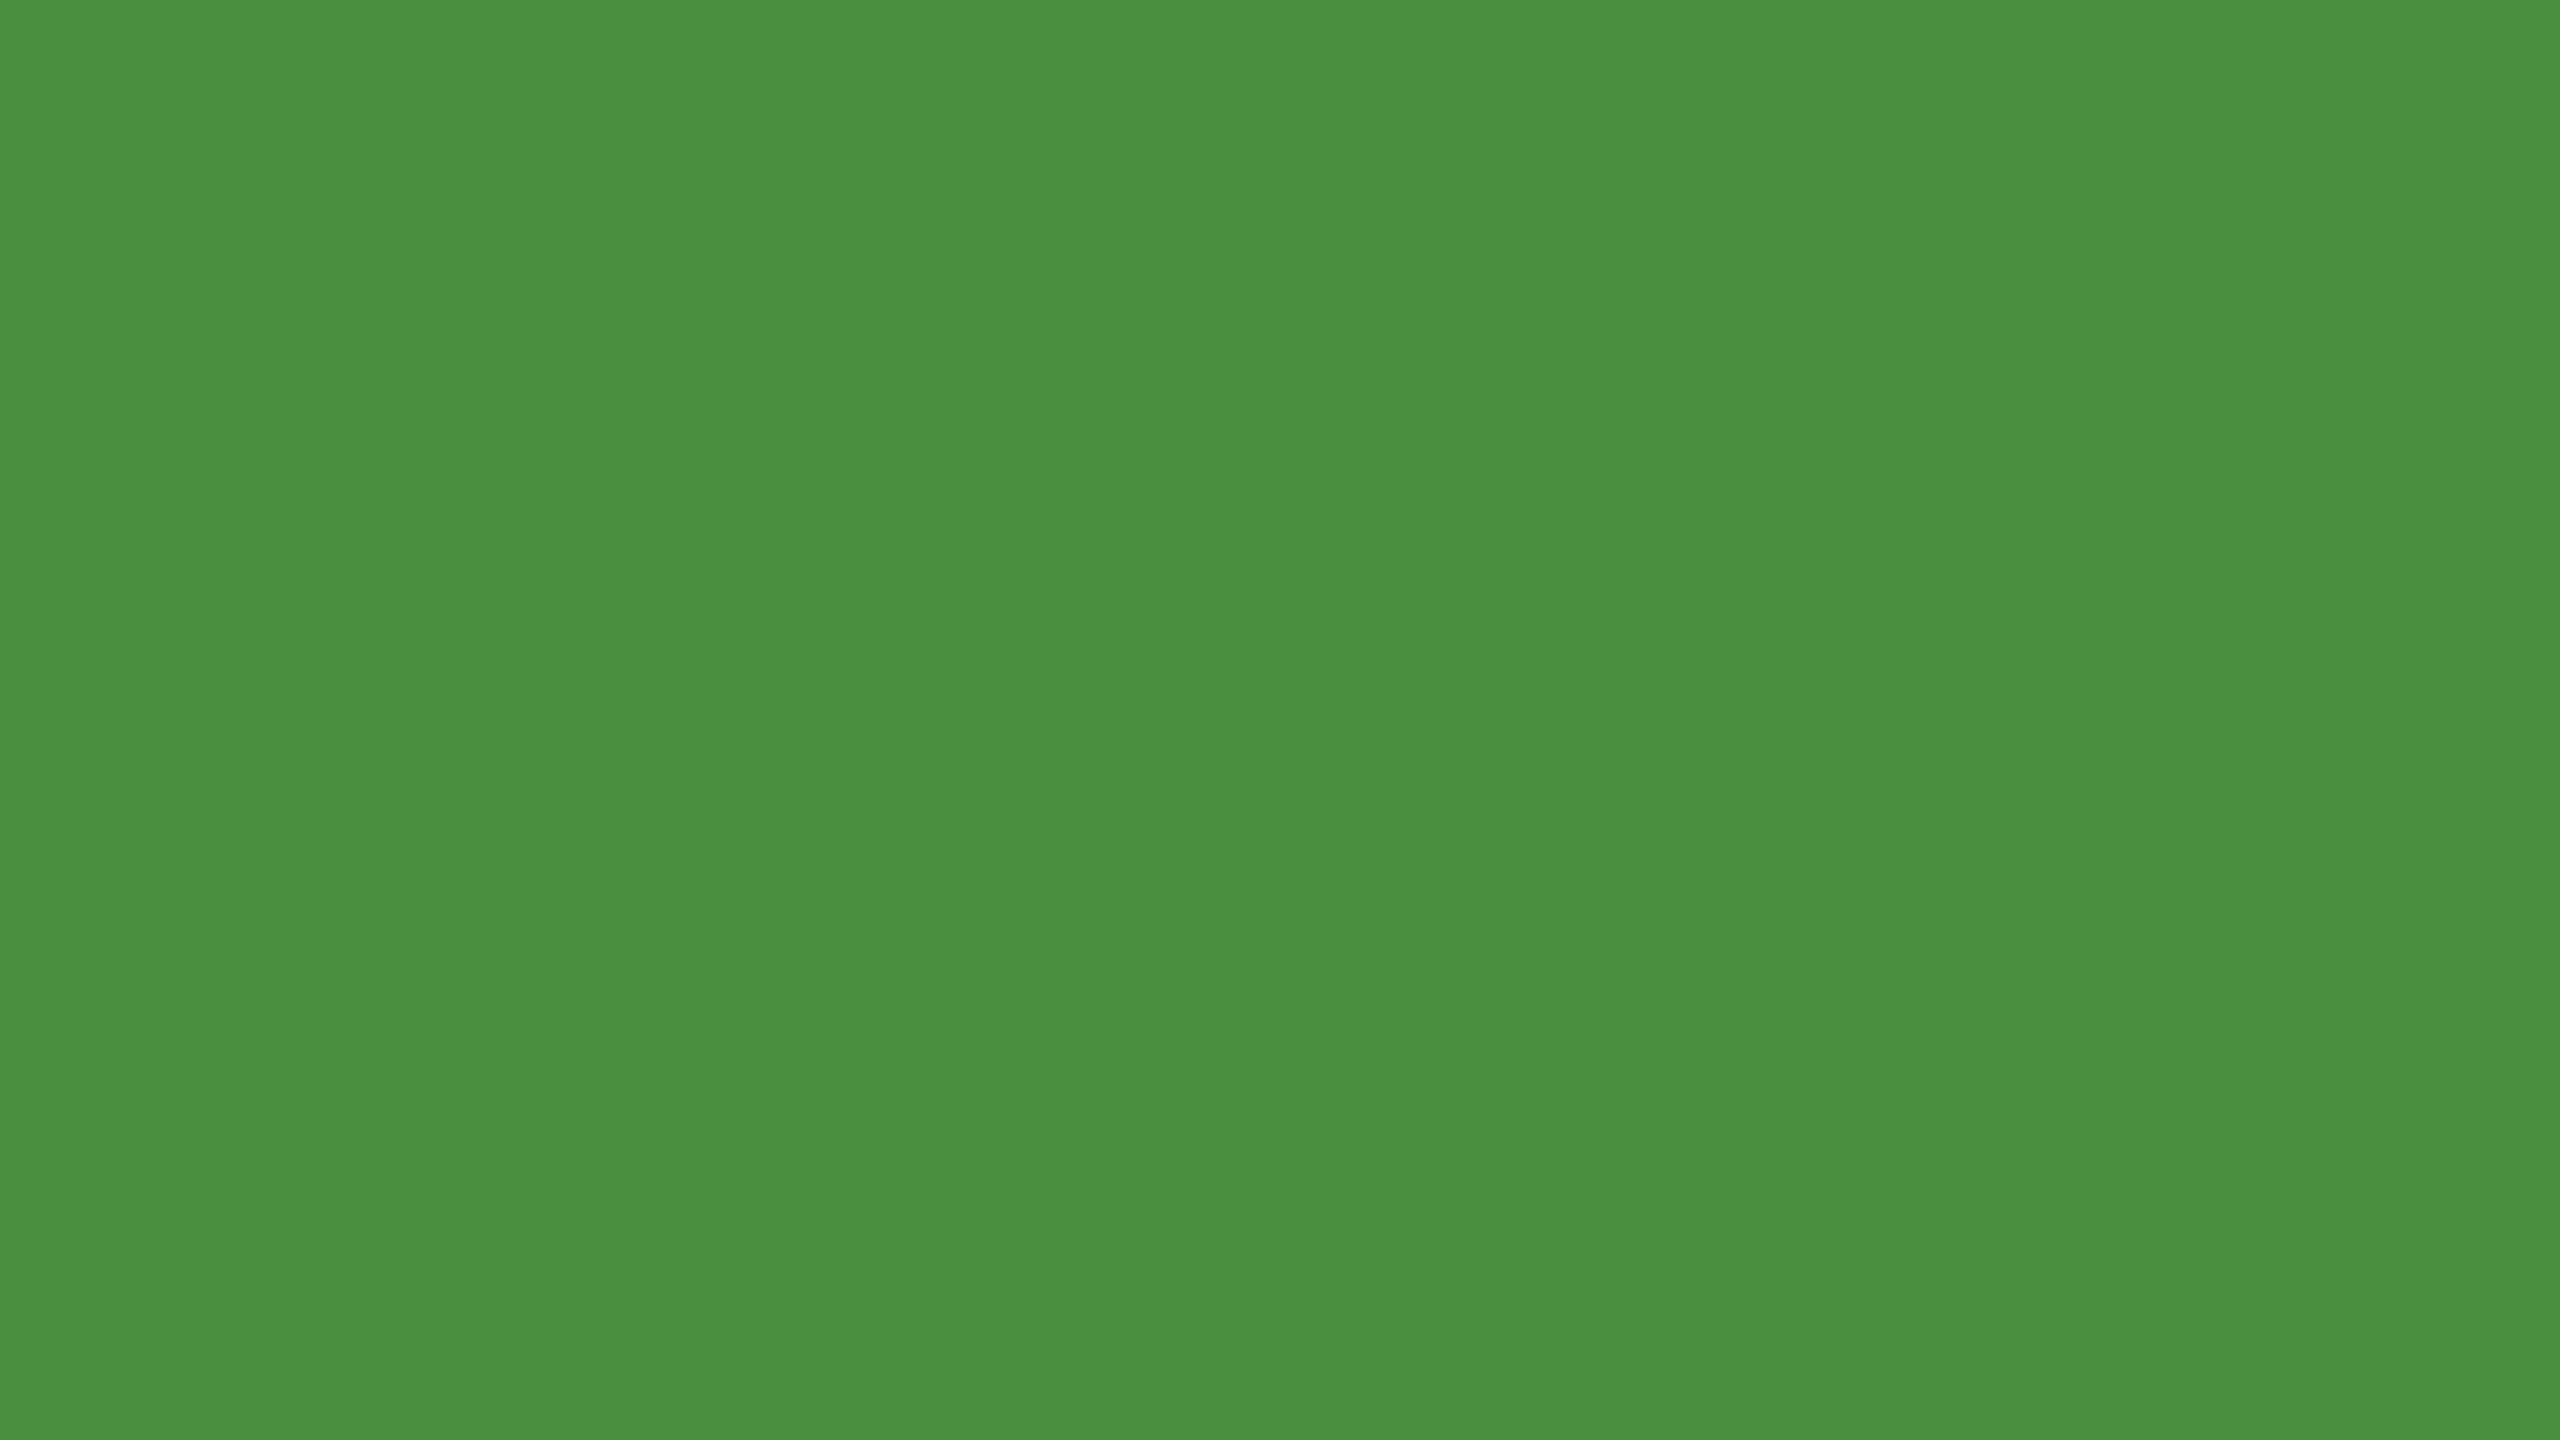 49+] Dark Green Desktop Wallpaper - WallpaperSafari